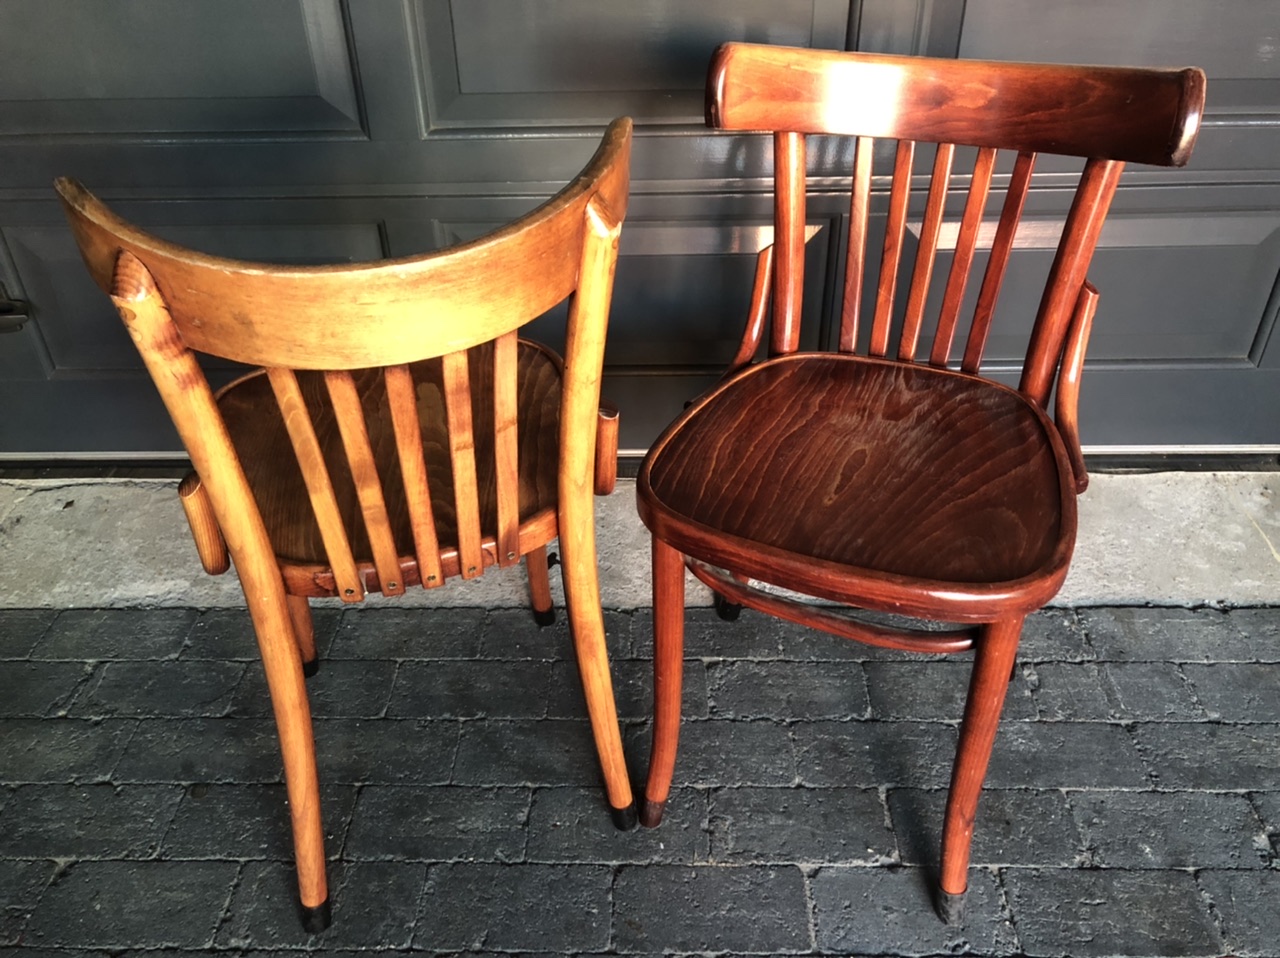 Cafestoelen de parel meubilair apeldoorn holland netherlands cafe chairs bistro houten spijlenstoelen amsterdam moordrecht